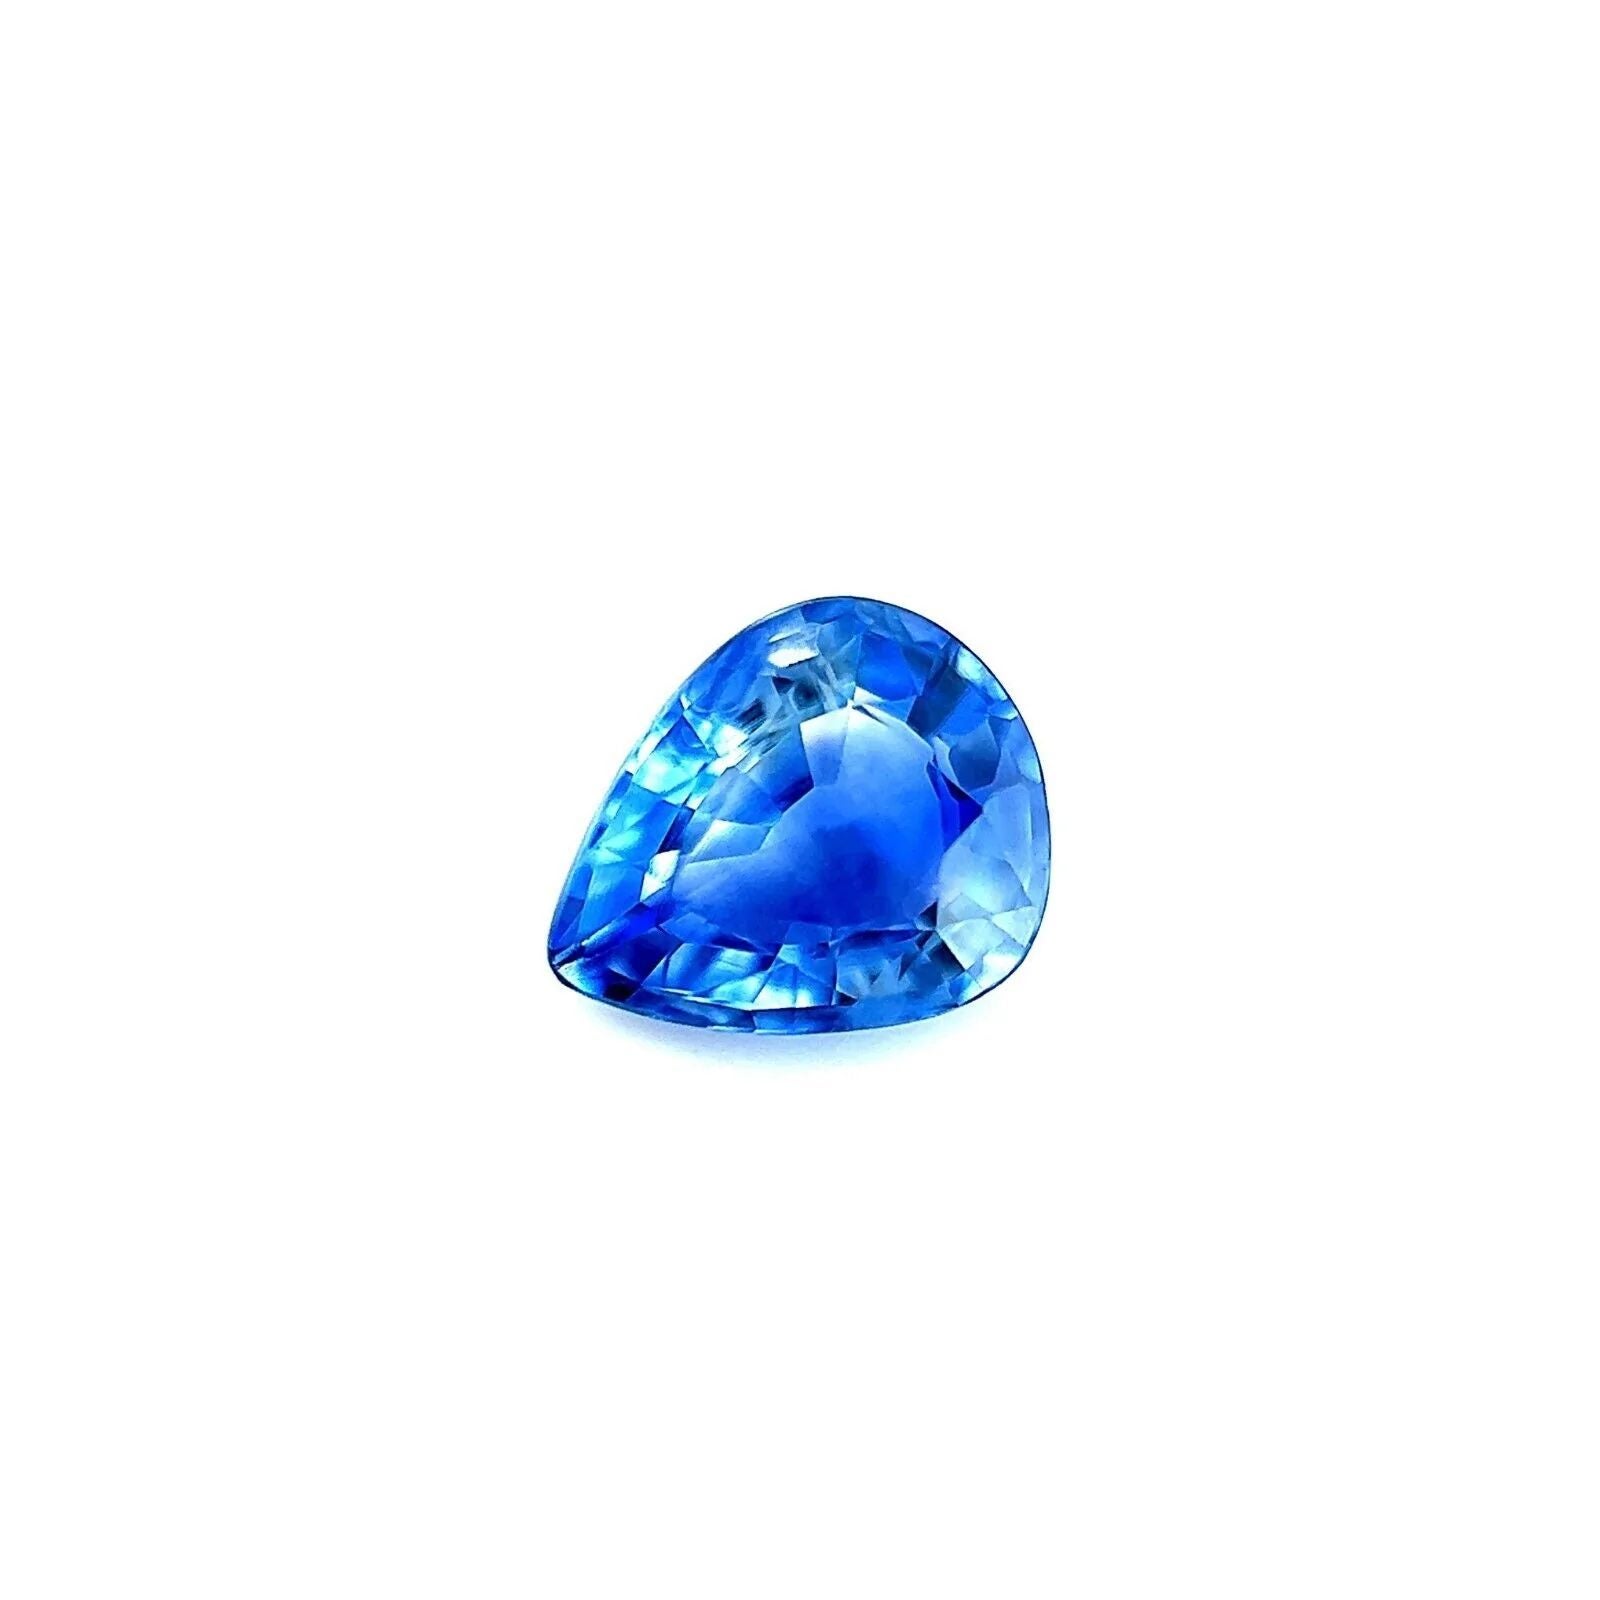 Fine pierre précieuse rare saphir bleu vif taille poire 0,88 carat